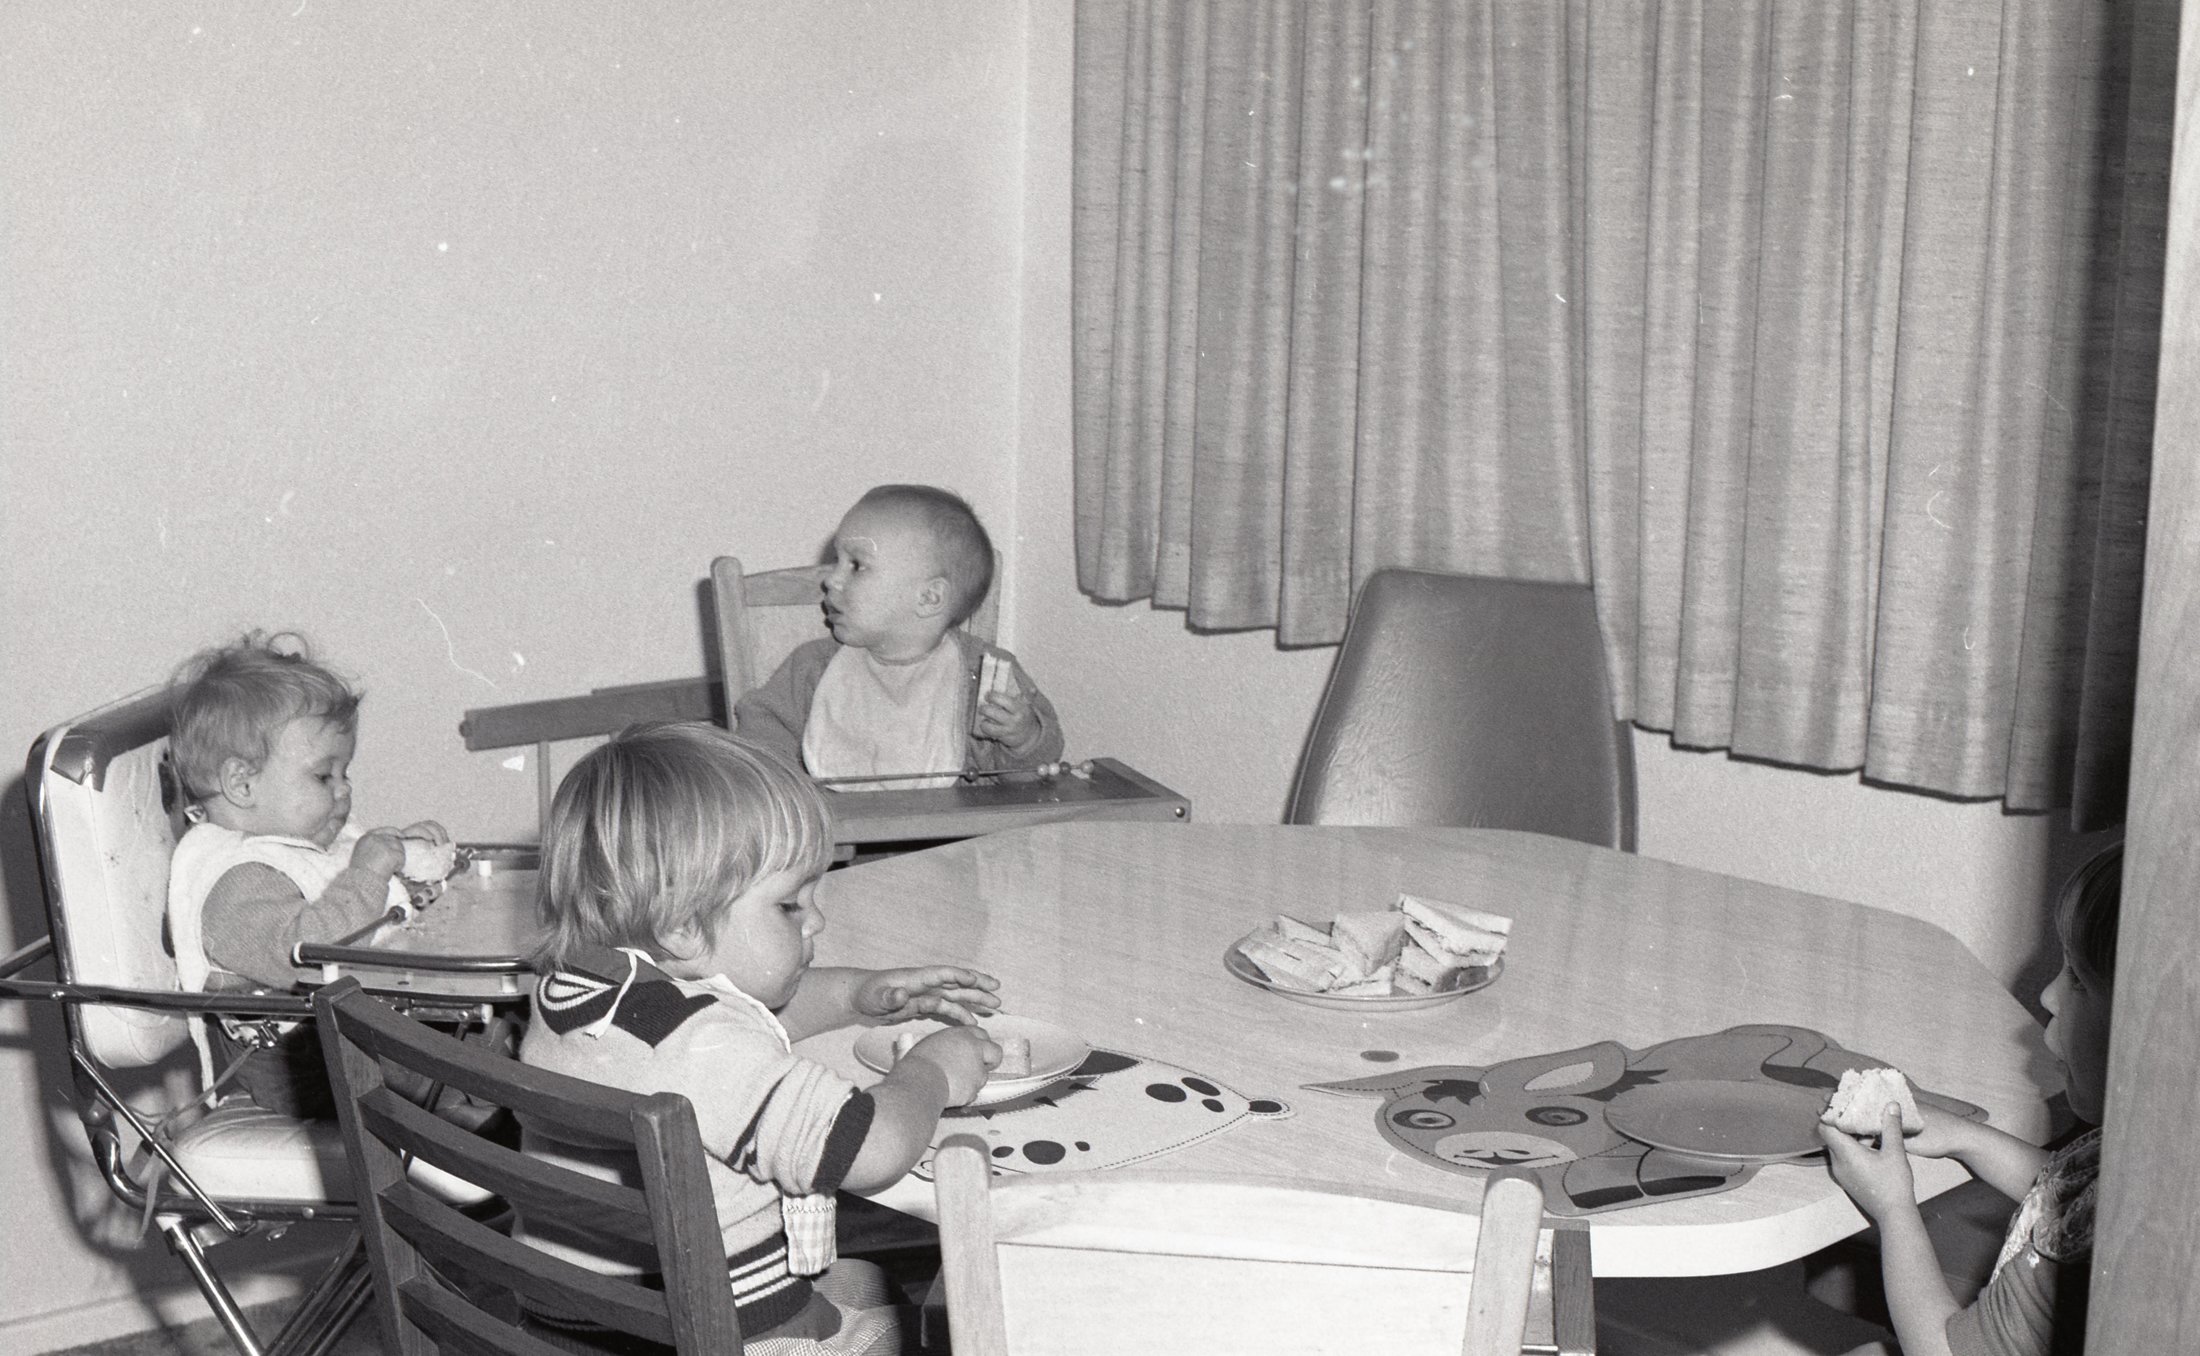 1976 - Children Eating And Doing Art